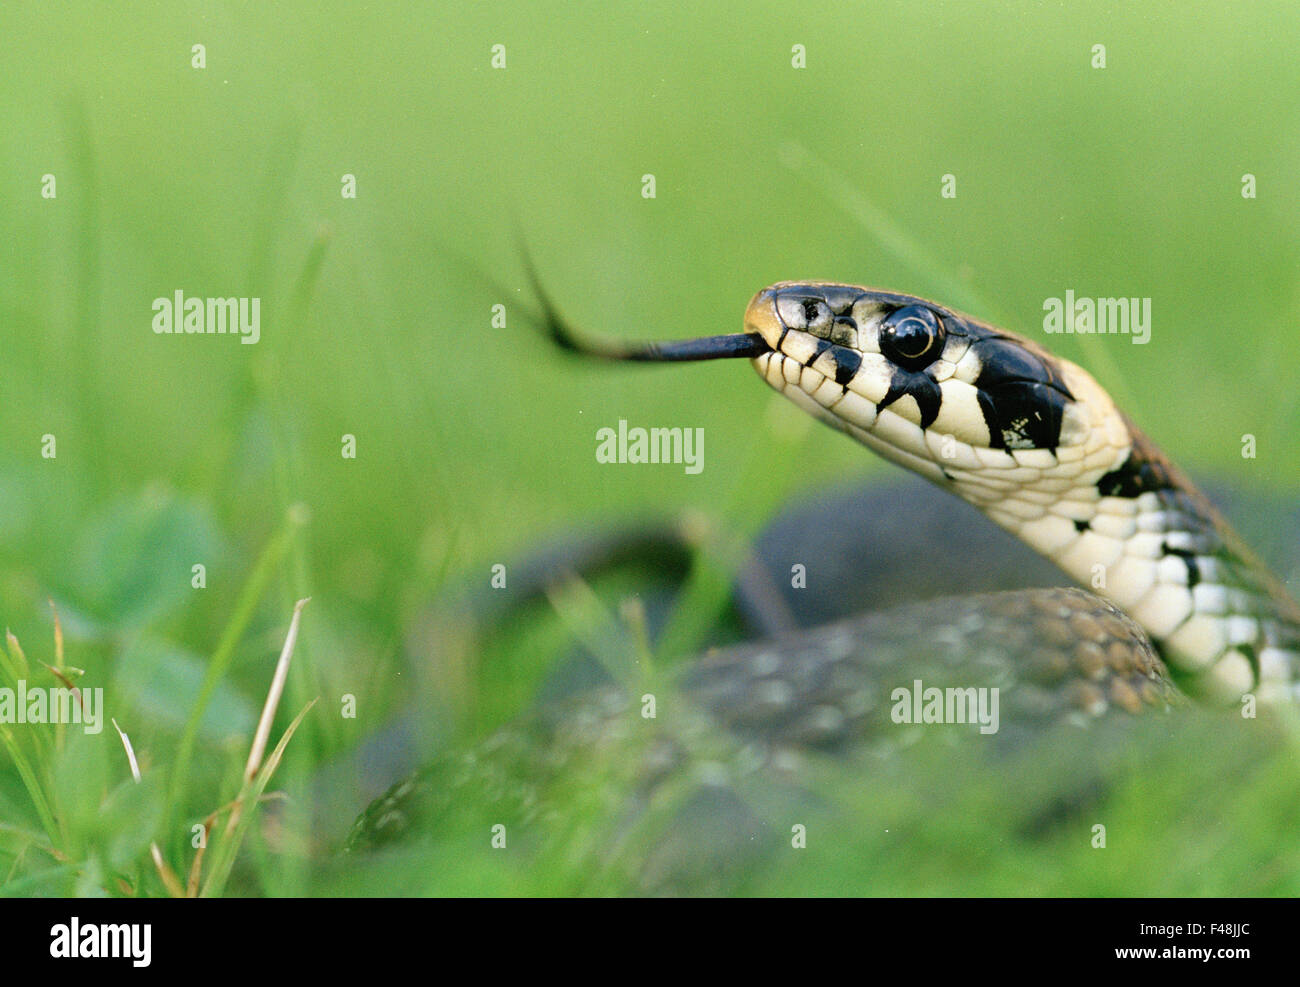 Les amphibiens black close-up image de couleur jour eye grass snake Haninge gris horizontal tête animaux invertébrés insectes circulation Banque D'Images